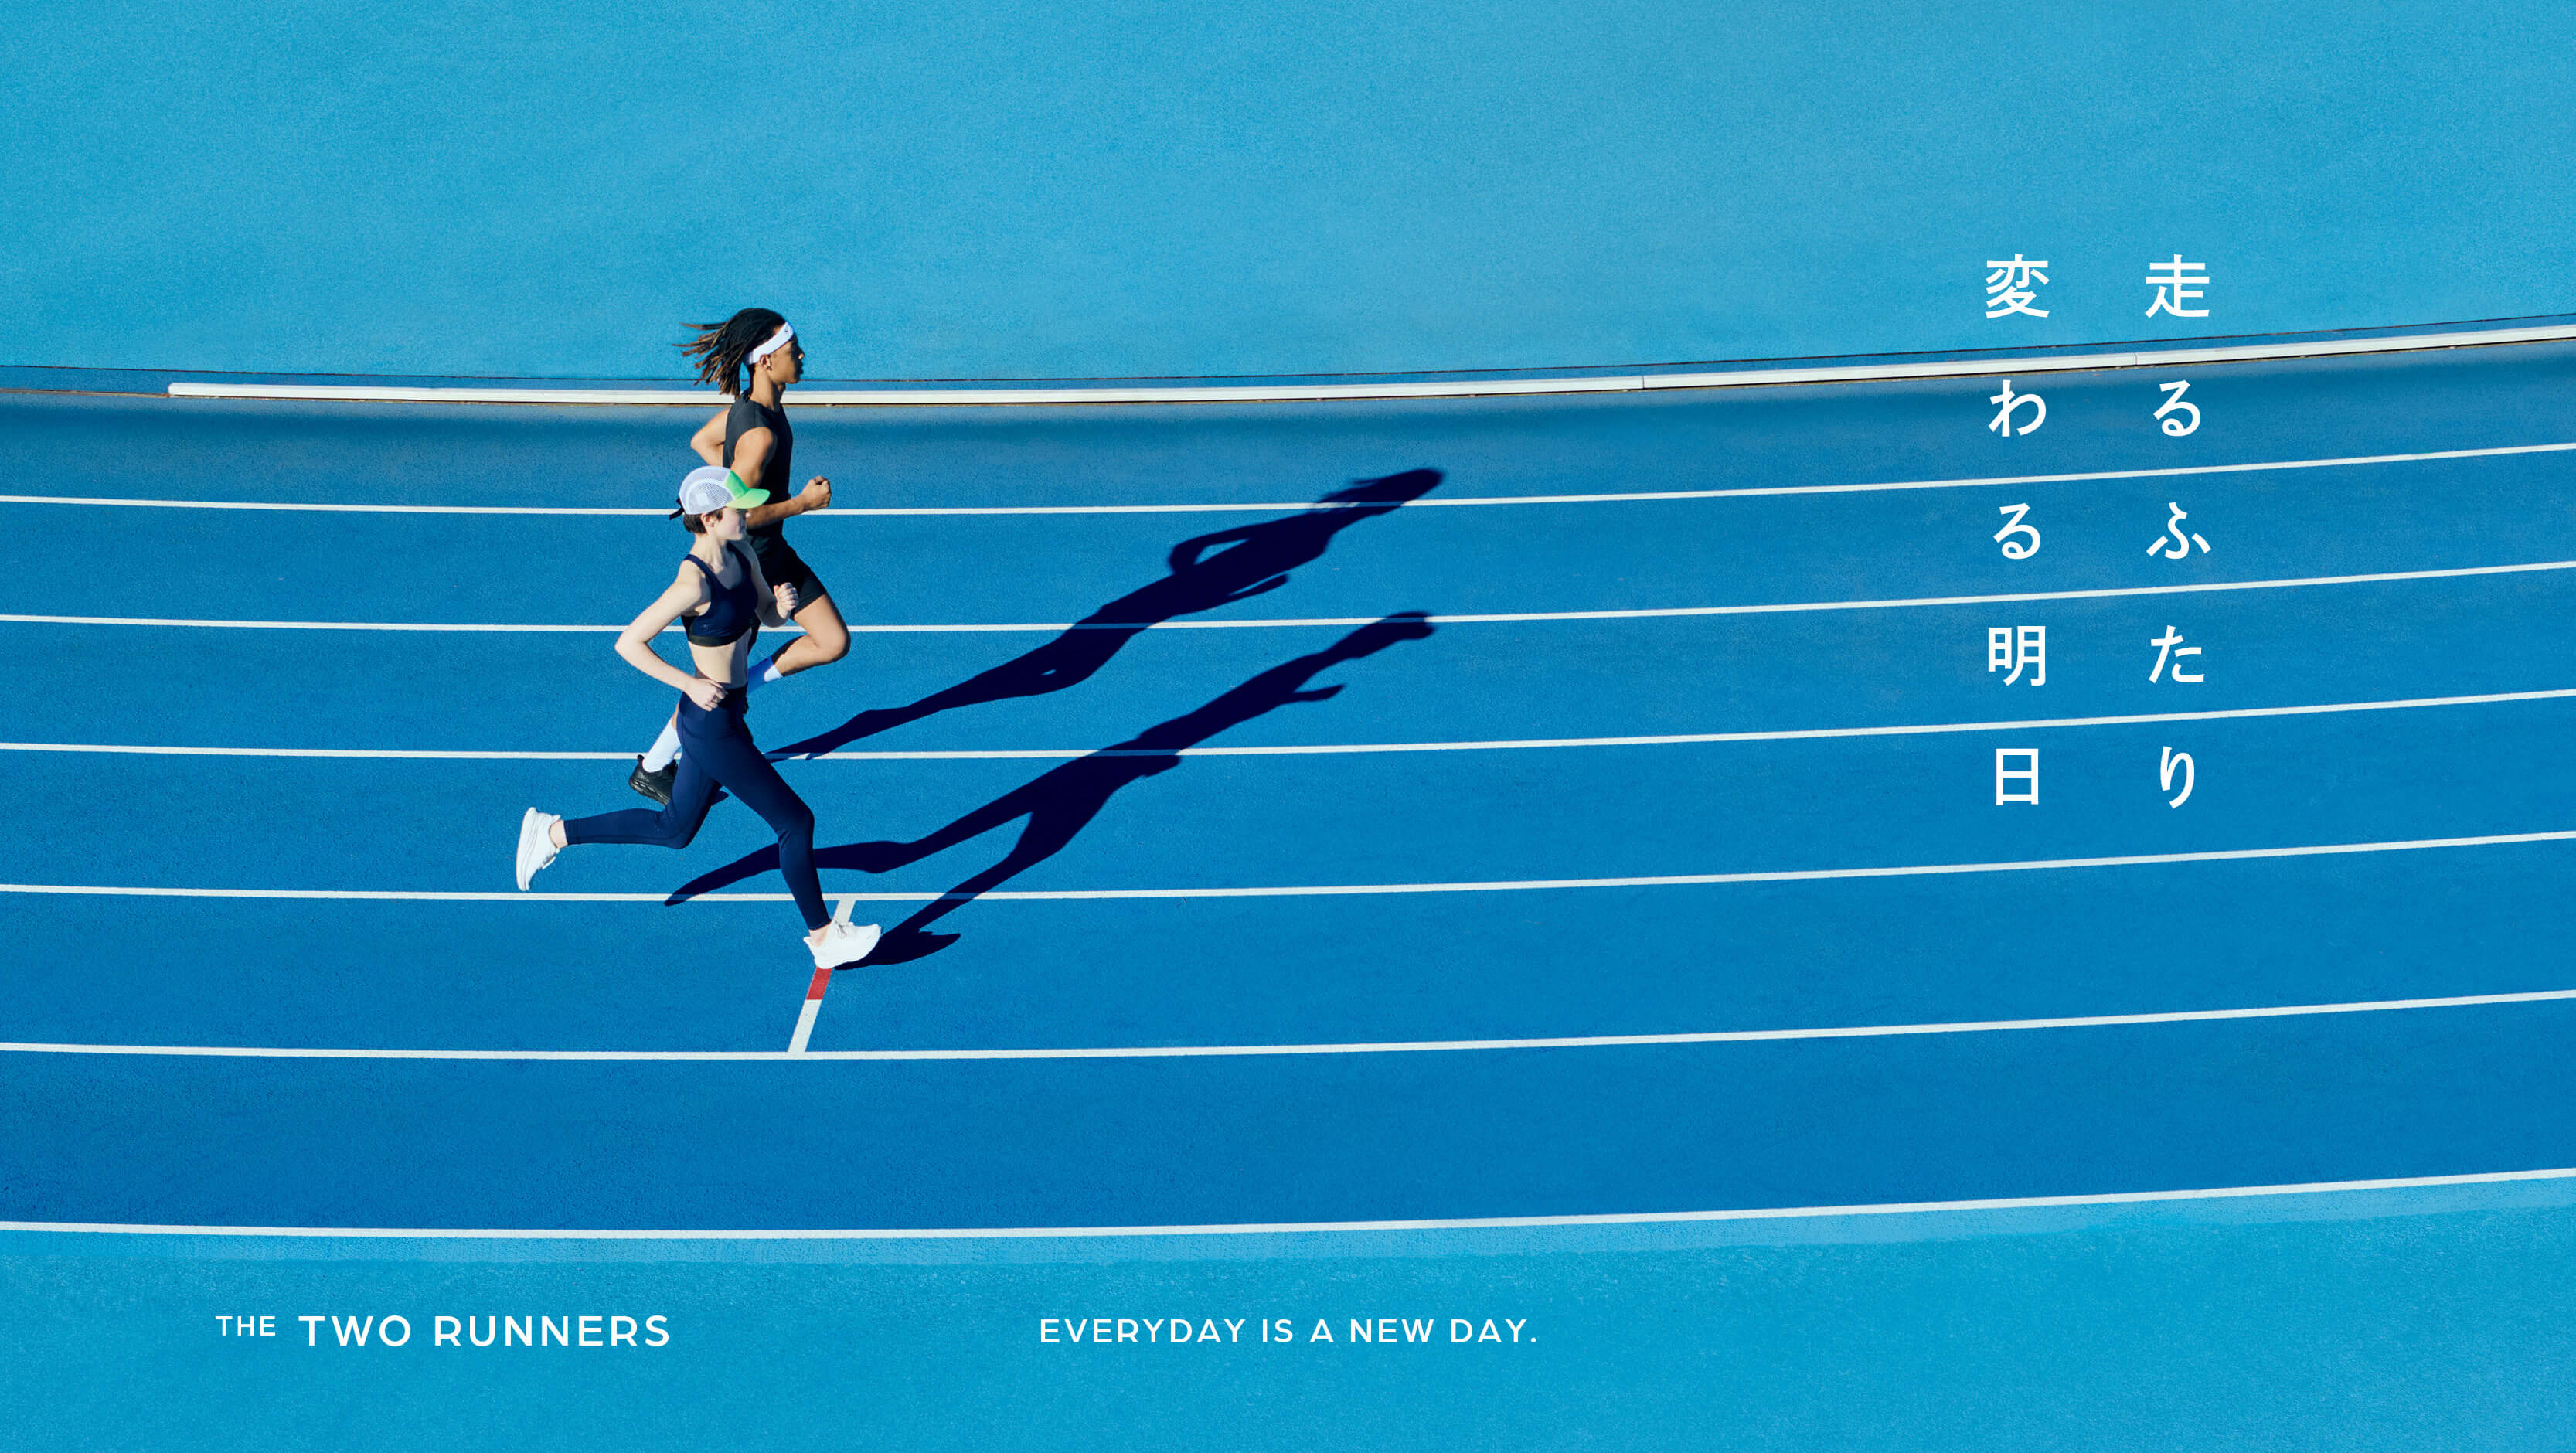 ⾛るふたり 変わる明⽇	THE TWO RUNNERS Everyday is a new day.